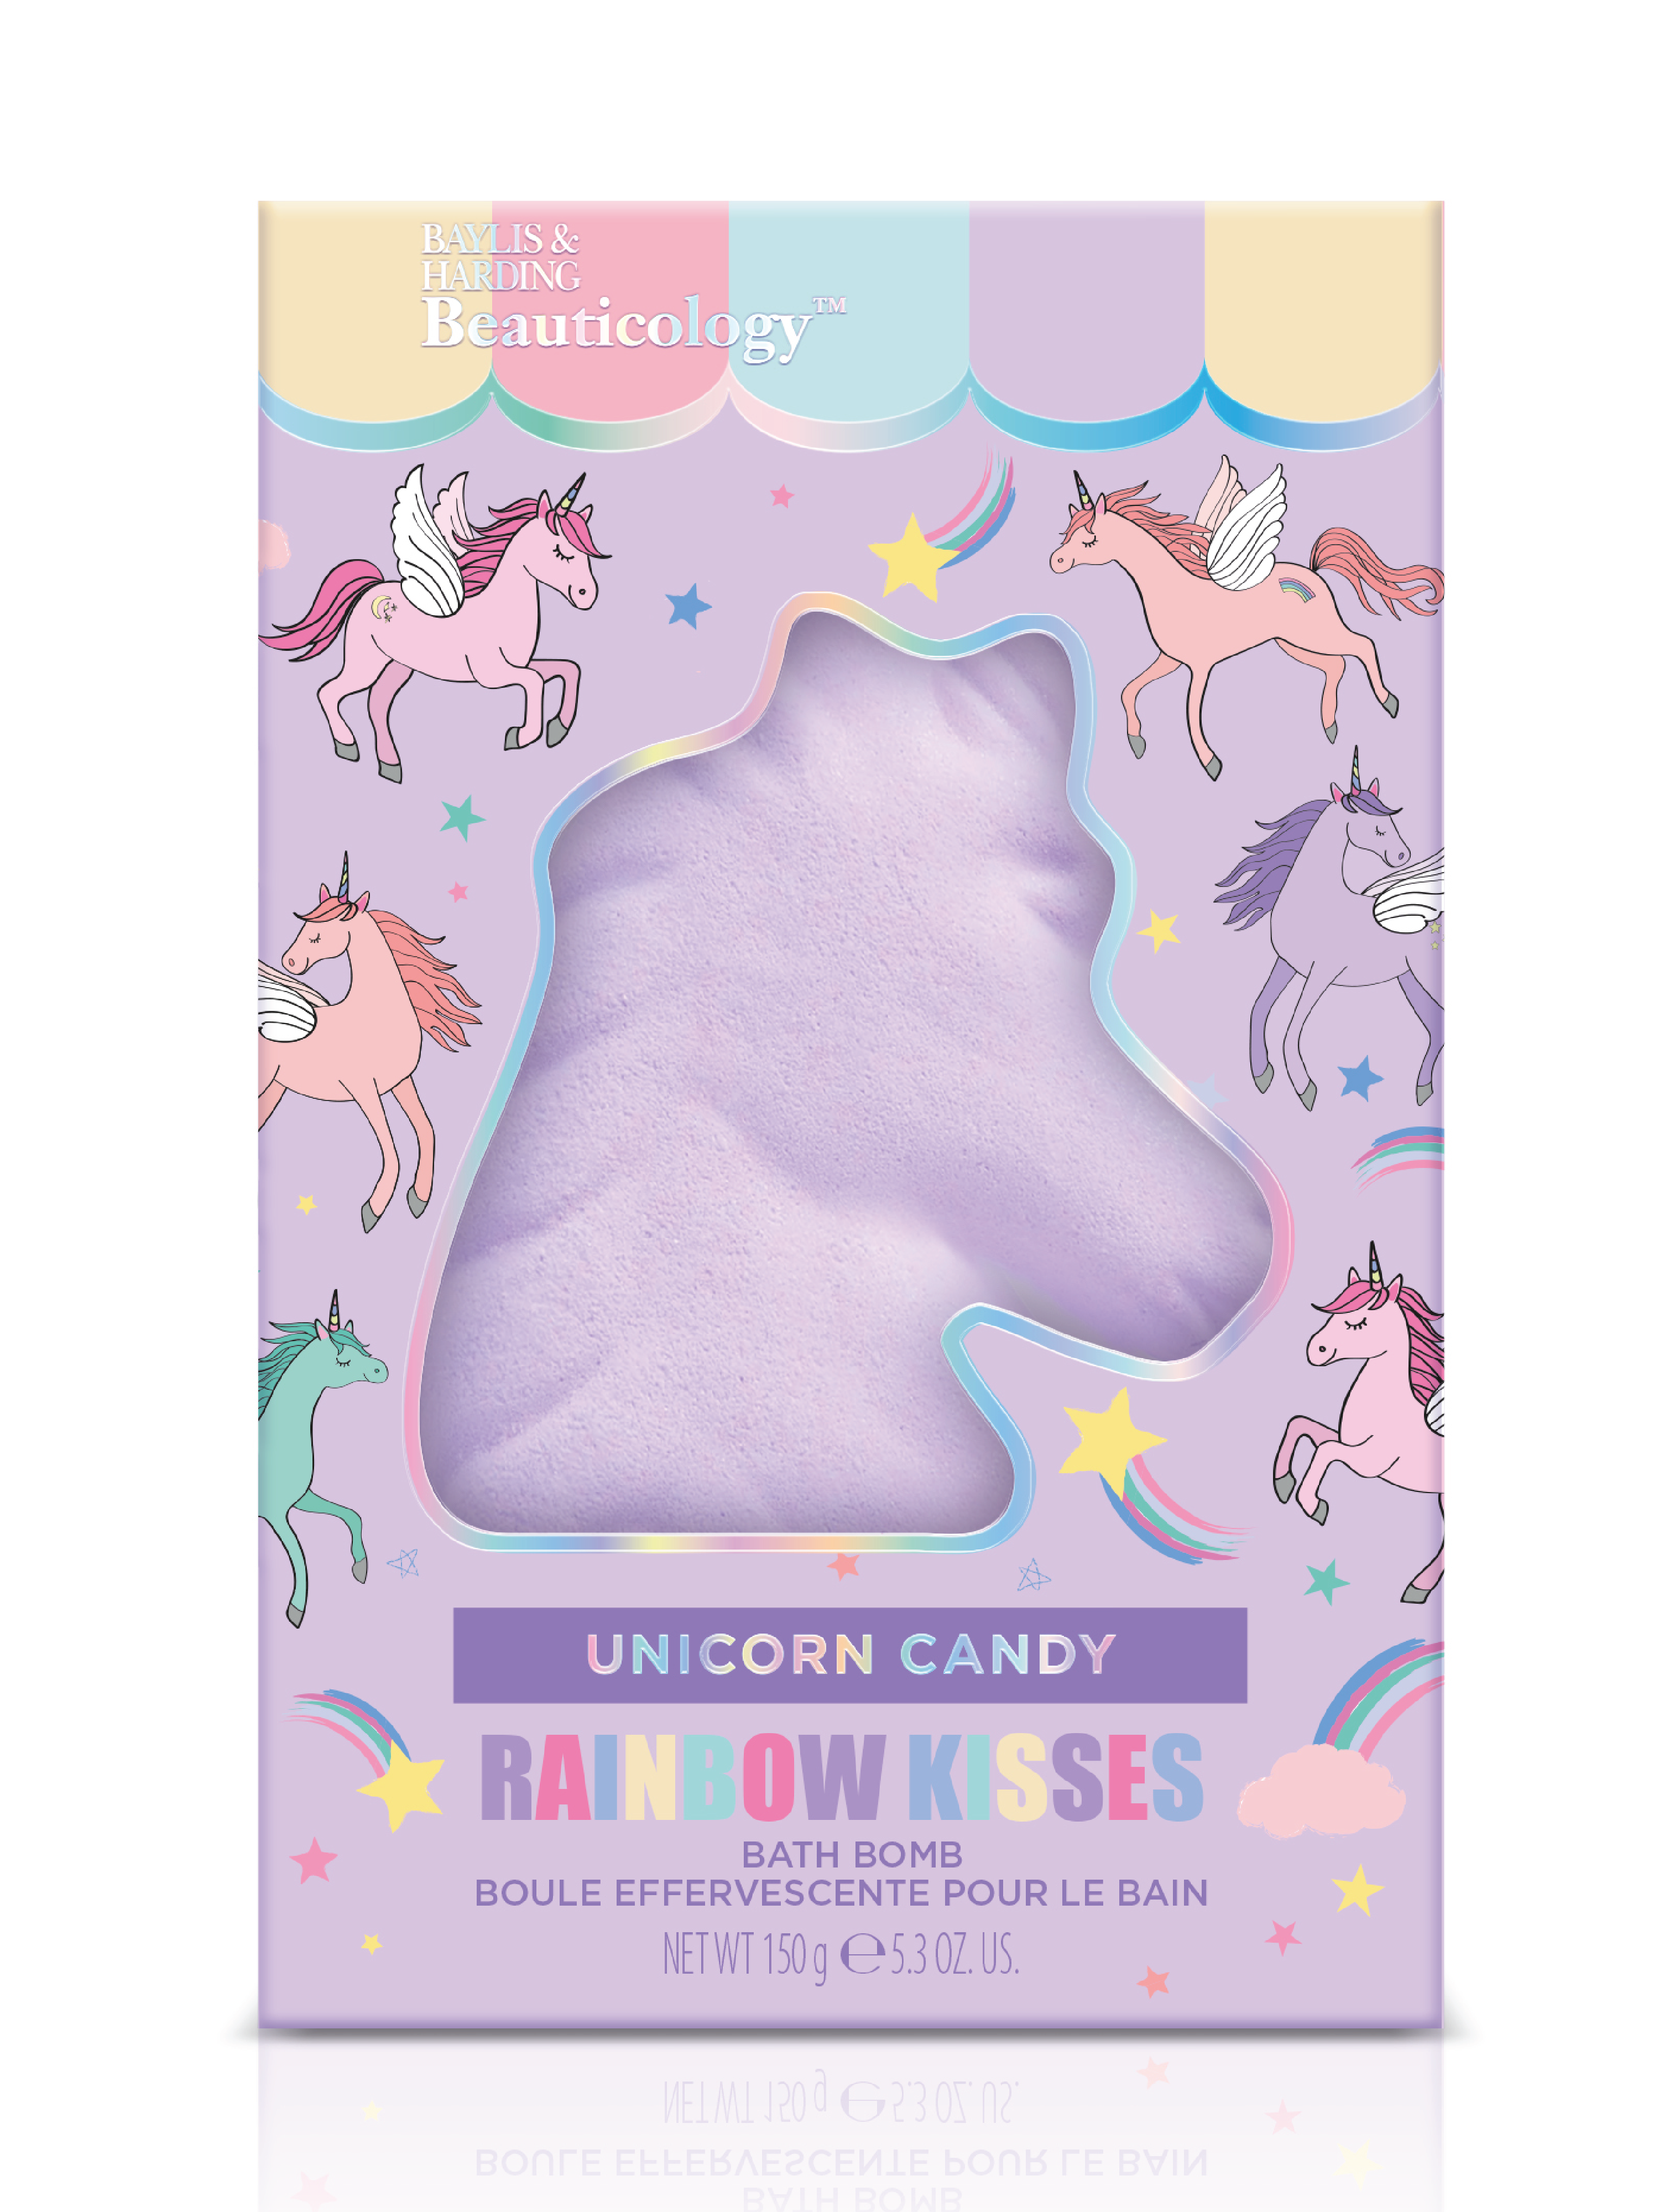 Baylis & Harding Beauticology Unicorn Candy Bath Fizzer, 150 g